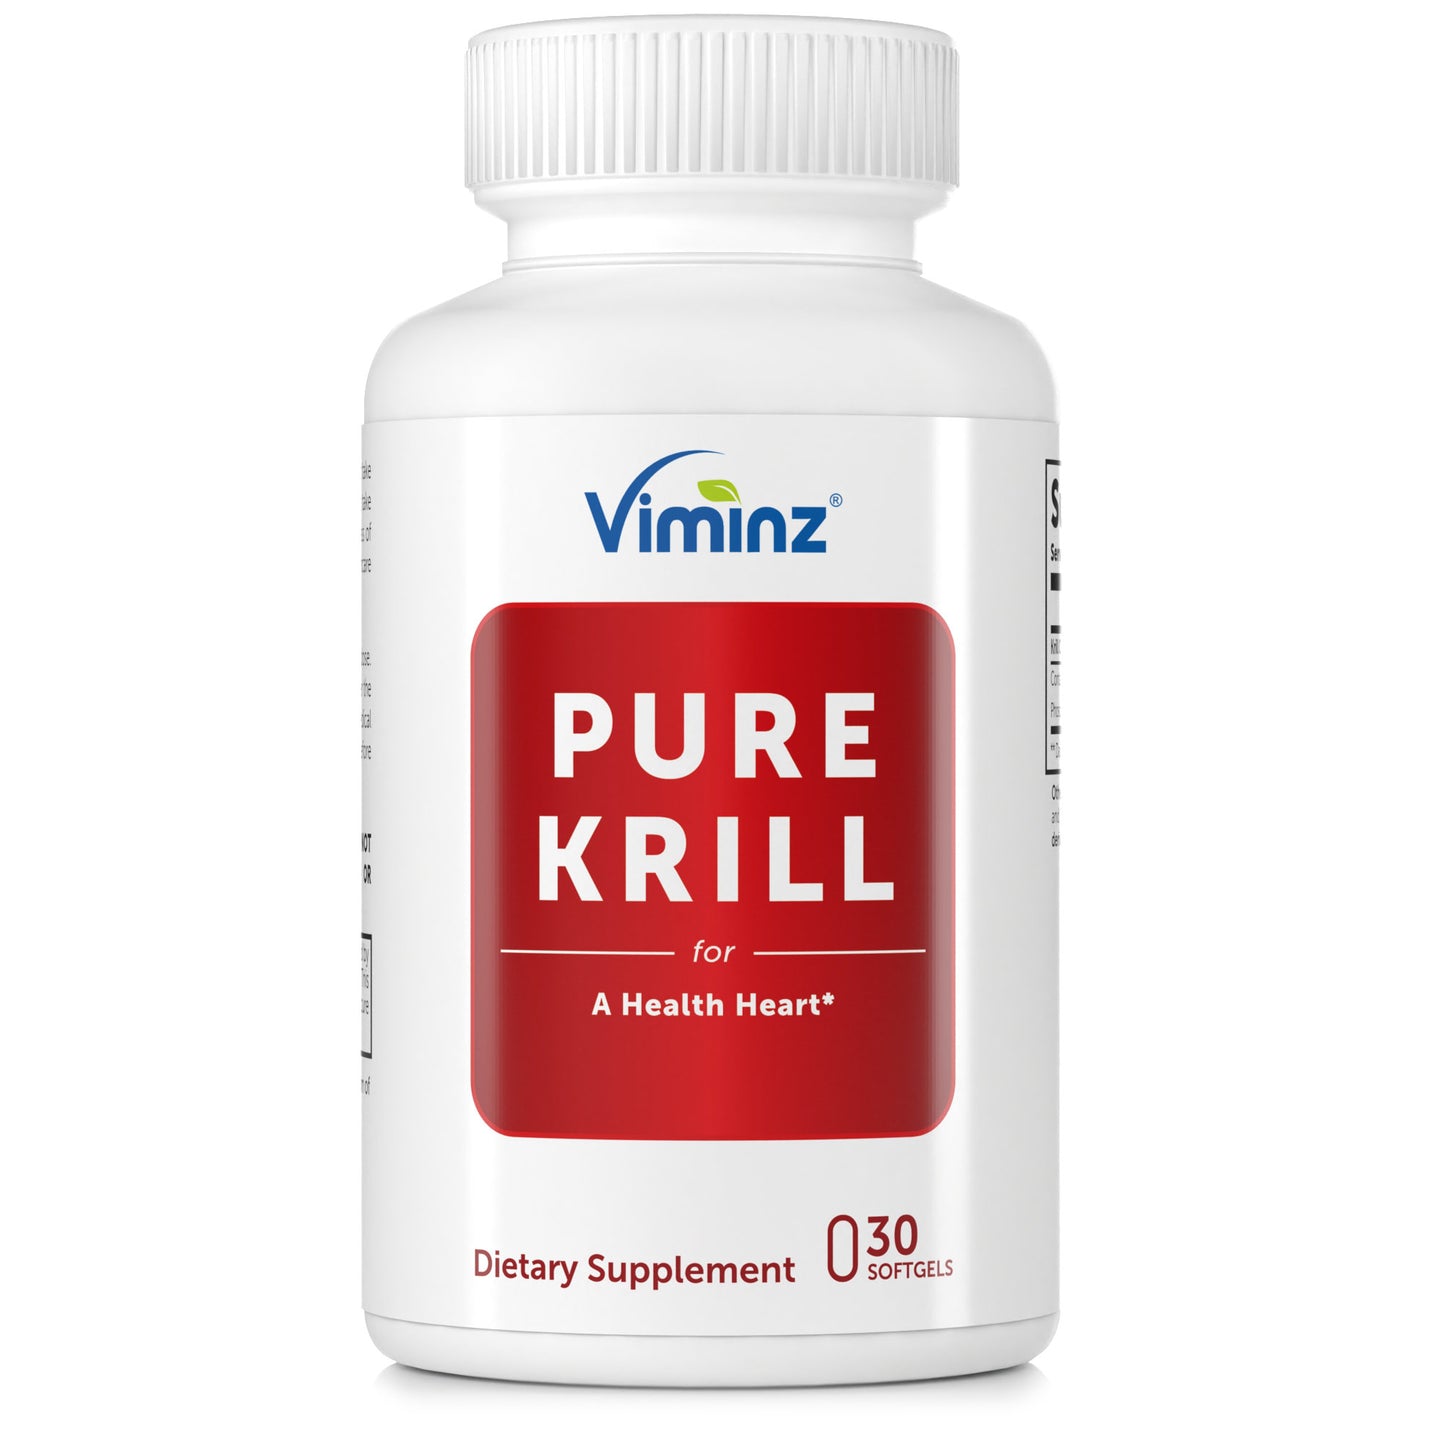 PURE KRILL - Supporta cuore sano e sistema cardiovascolare* - 60 capsule